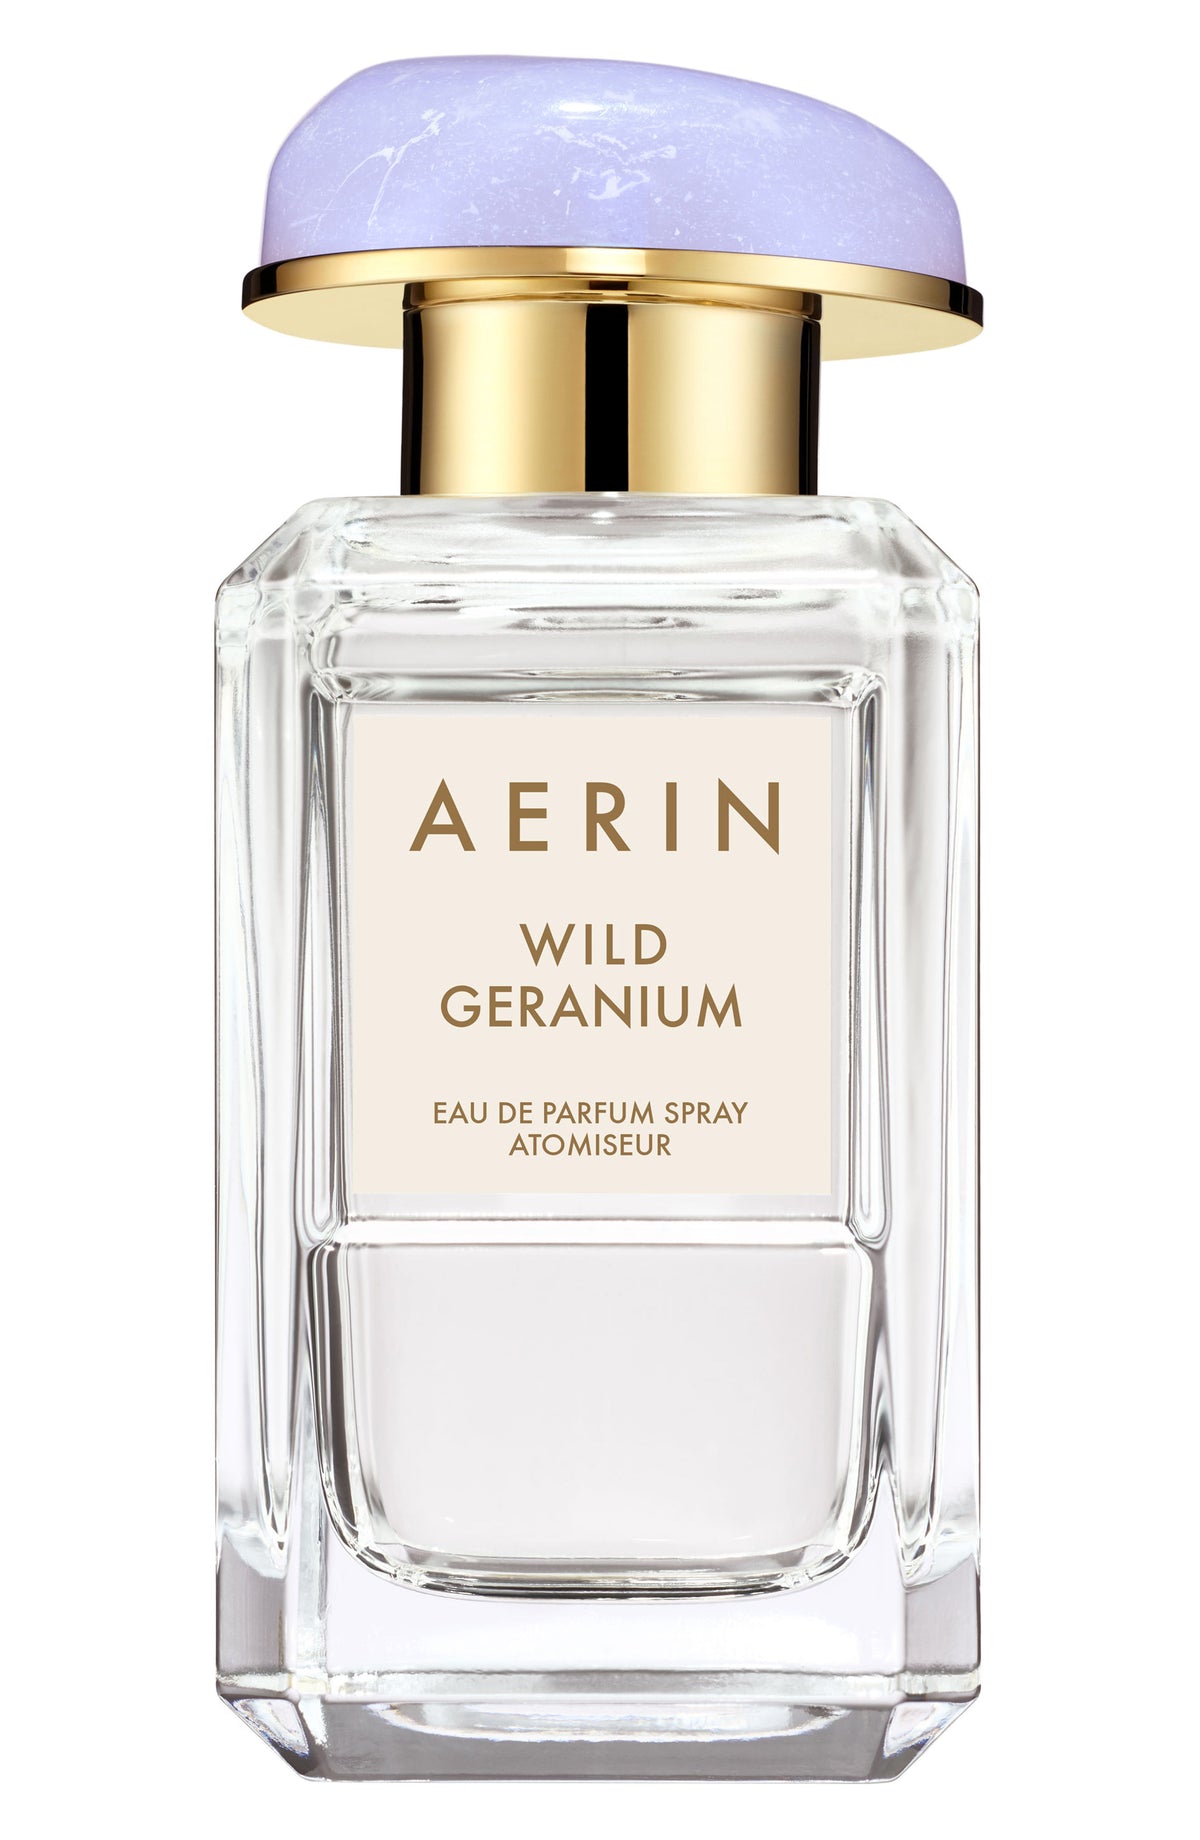 AERIN Wild Geranium Eau de Parfum Spray 1.7 oz